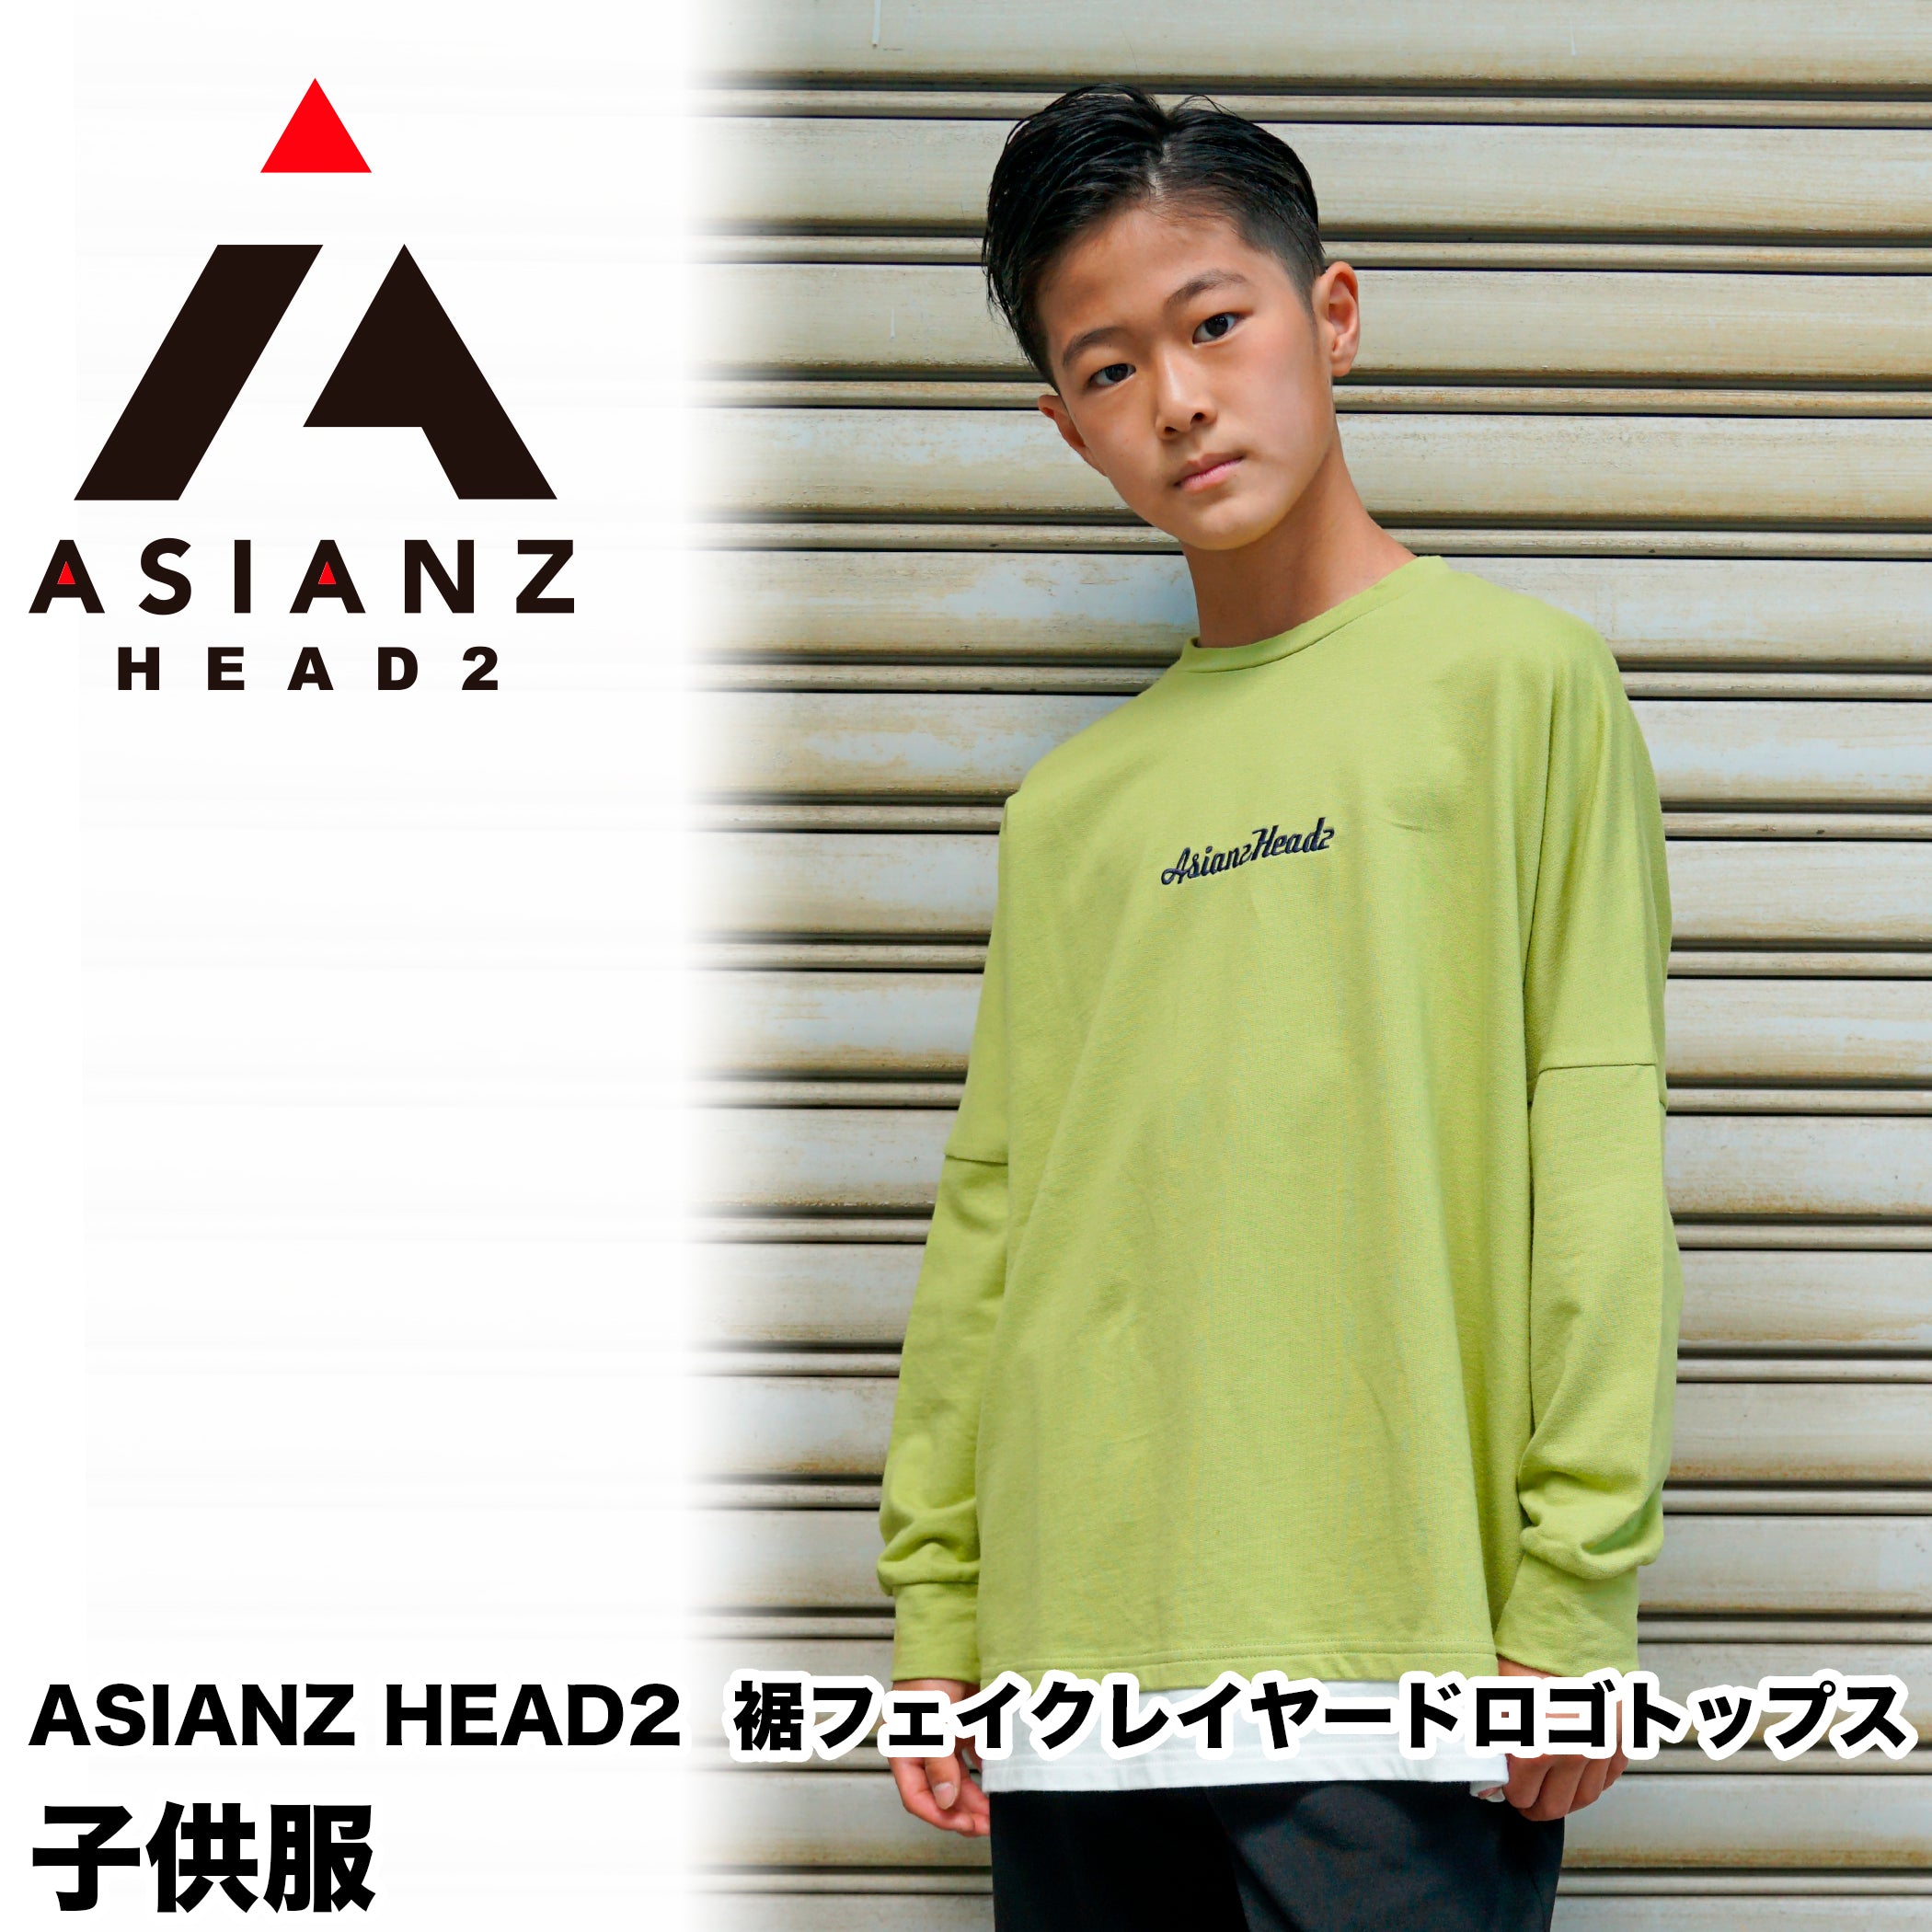 40%オフ! セール商品)ASIANZ HEAD2 裾フェイクレイヤードロゴトップス